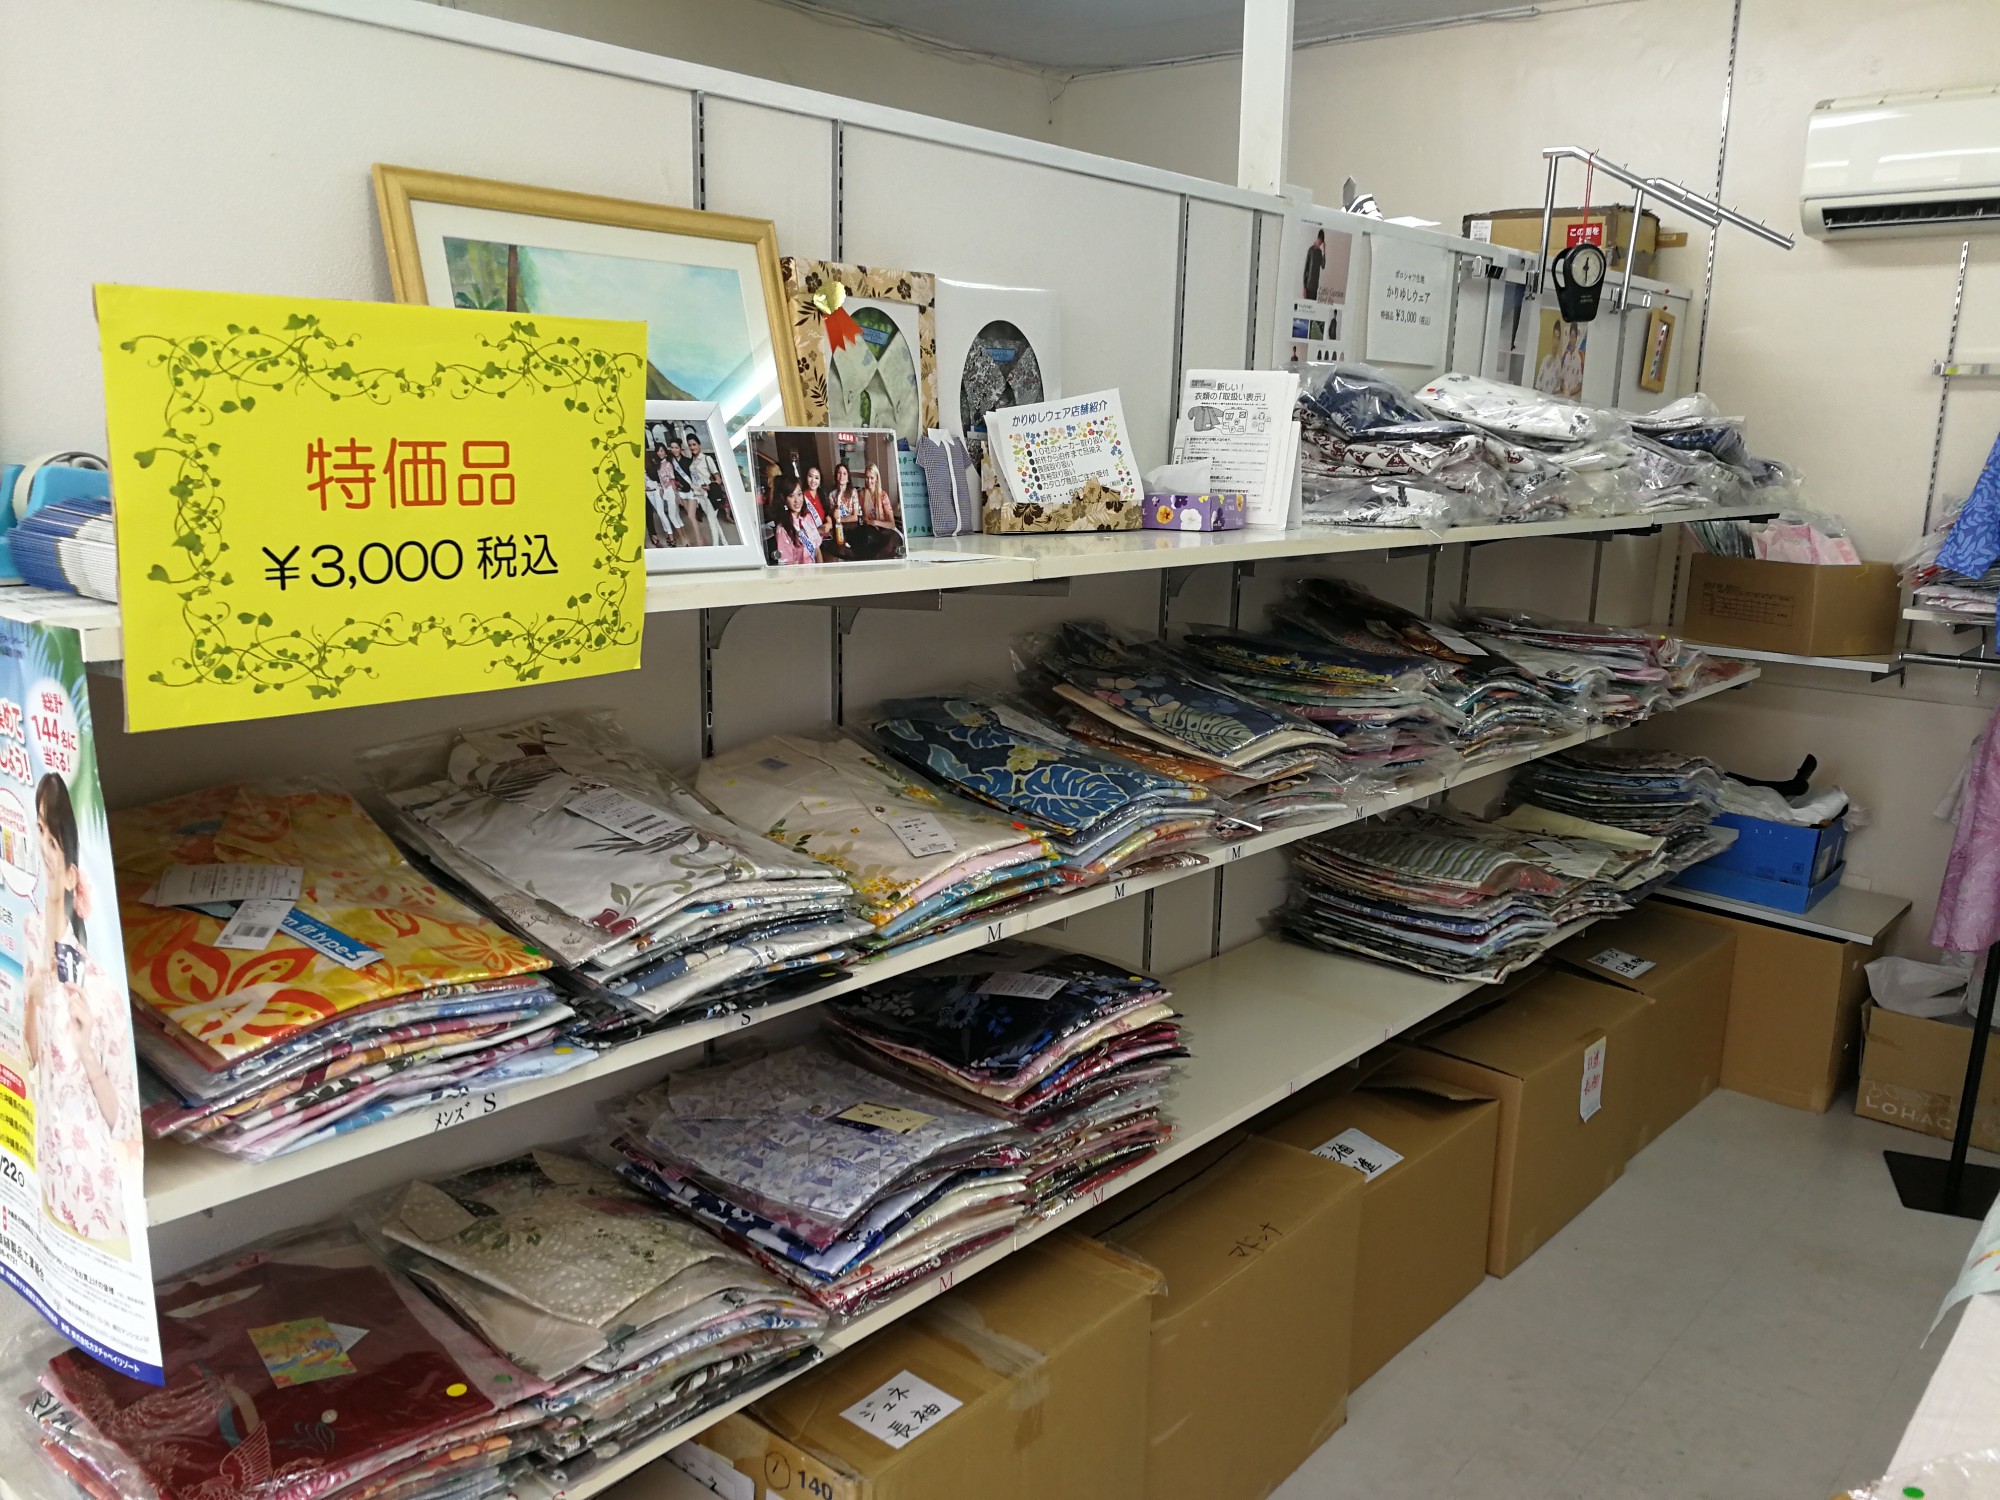 かりゆしウェアがなんと3000円だった 沖縄県衣類縫製品工業組合の事務所横の店舗は激安です ウリ Okinawa